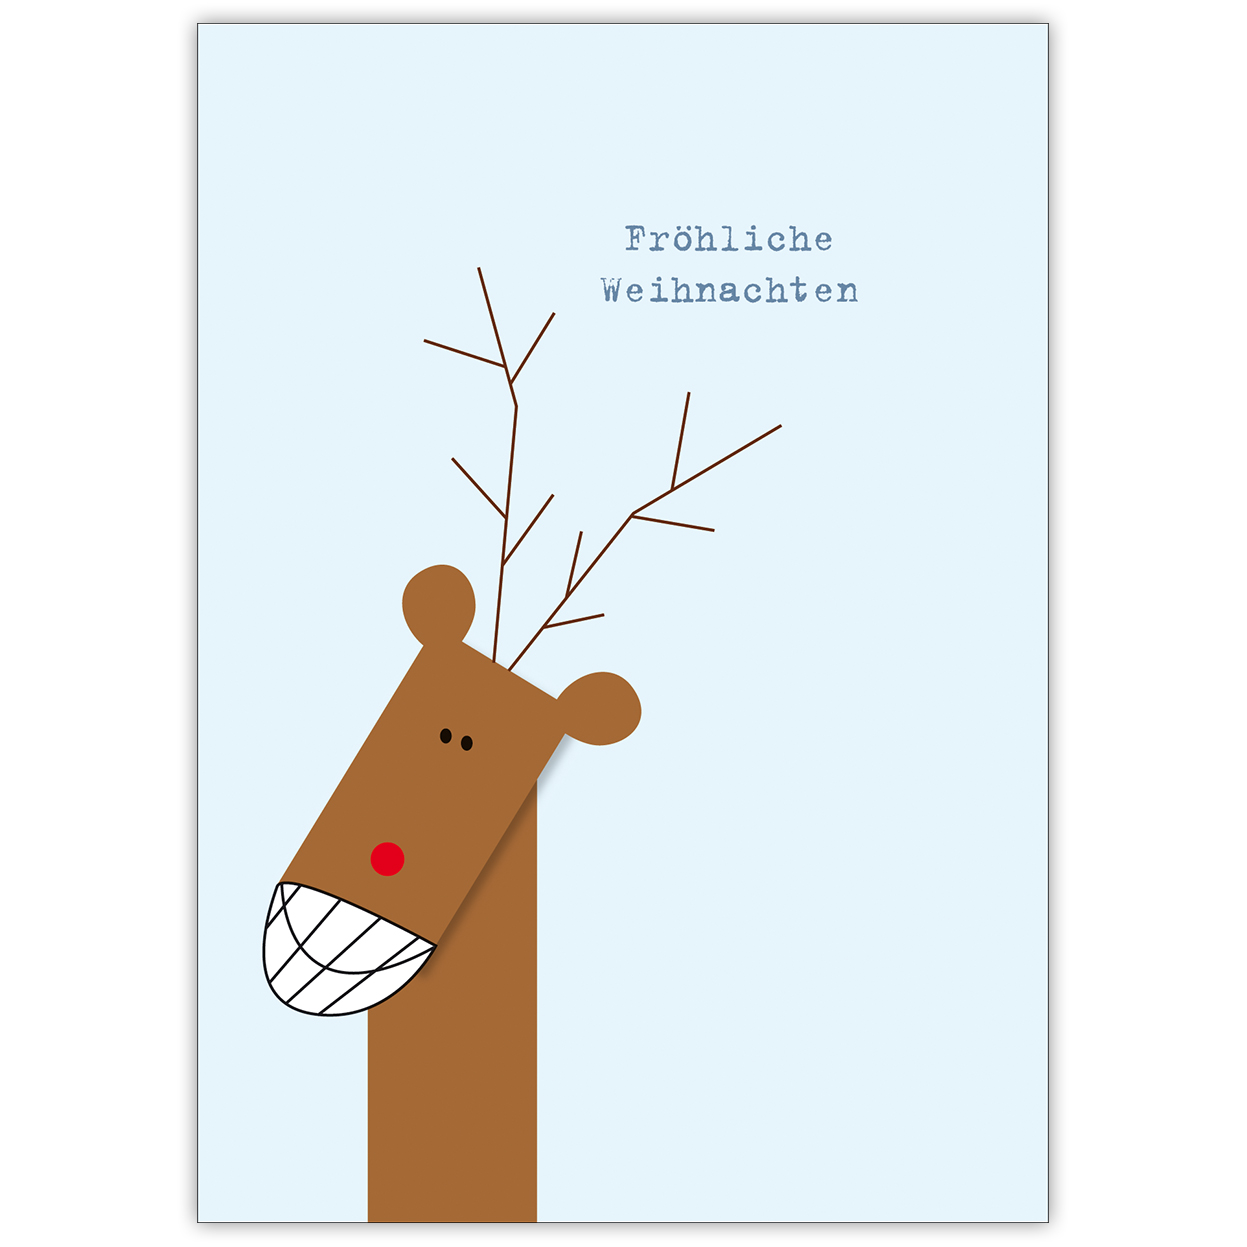 Witzige Weihnachtskarte um fröhliche Weihnachten mit grinsenden Elch zu wünschen